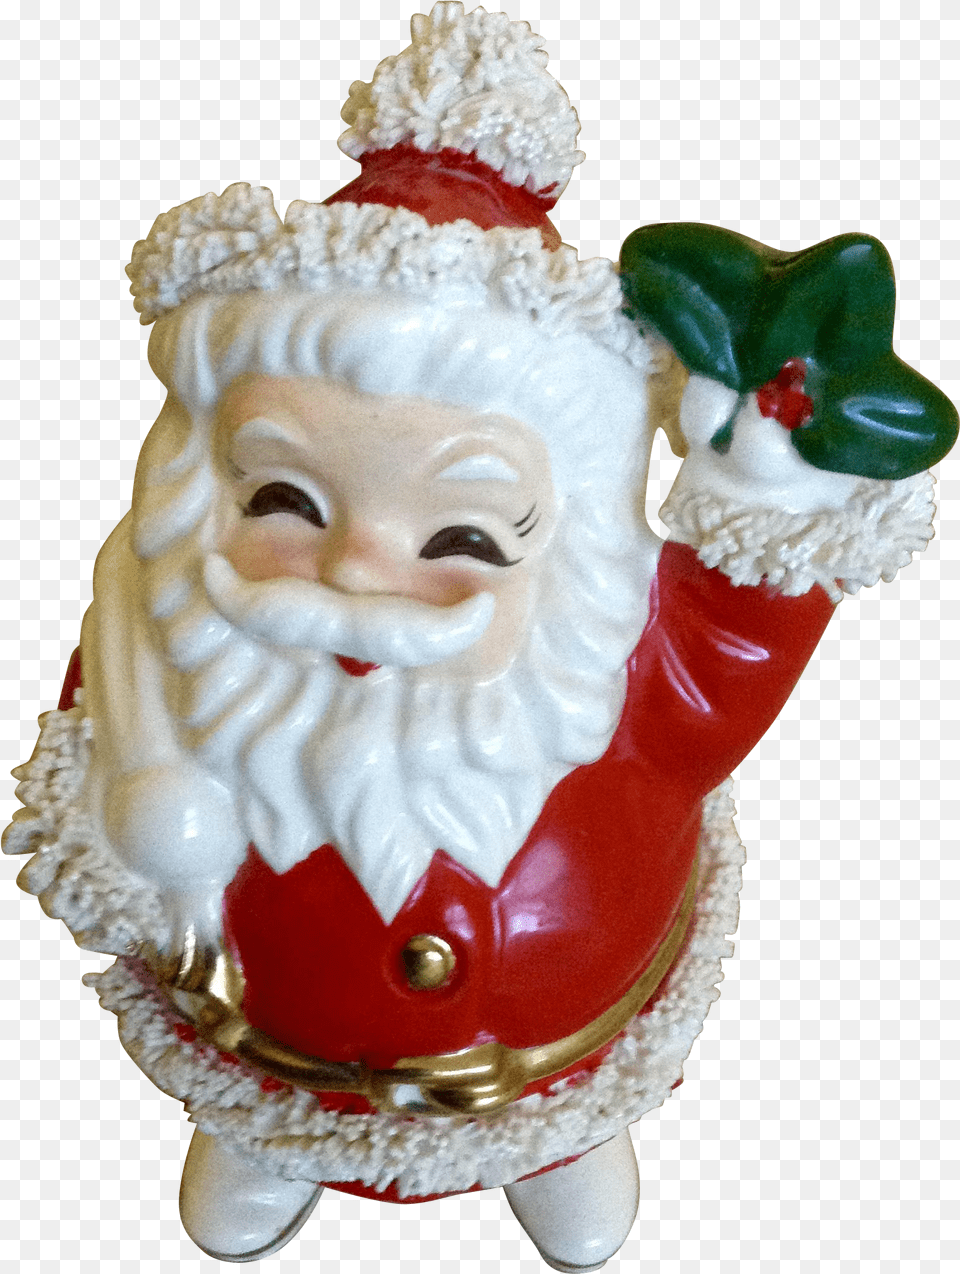 Vintage Santa Claus Santa Claus, Figurine, Pottery, Art, Porcelain Free Png